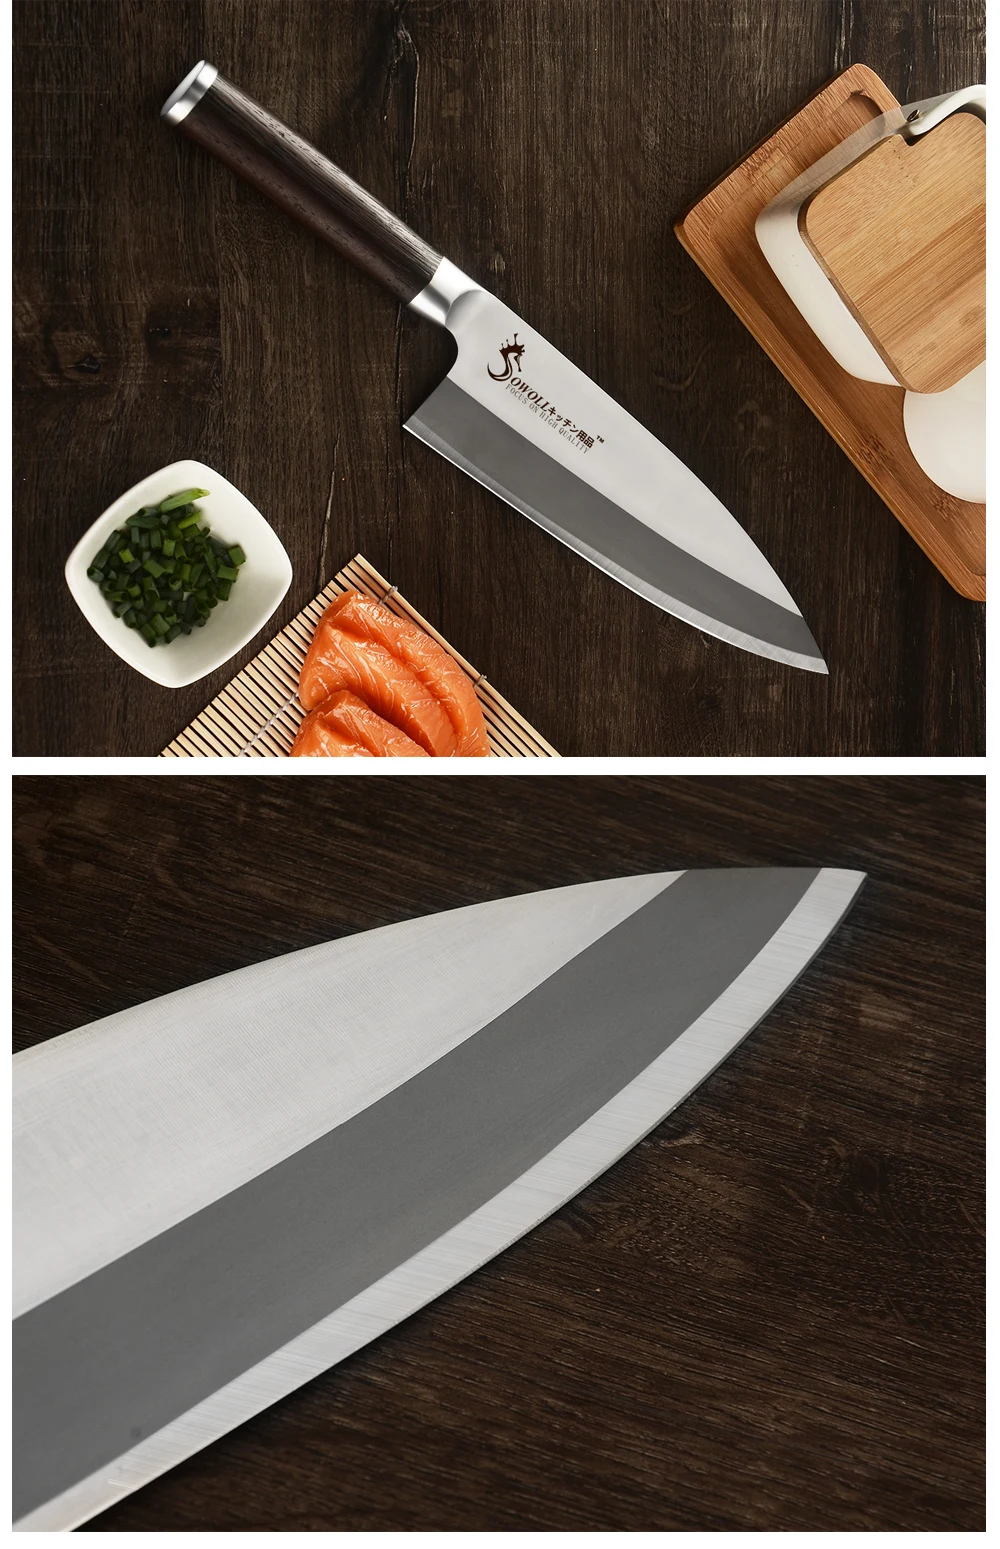 Sowoll Кухня Ножи набор Профессиональные Кухонные ножи Набор японский, из нержавеющей стали Кухня Ножи комплект дерево венге ручка Острый кухонный топорик